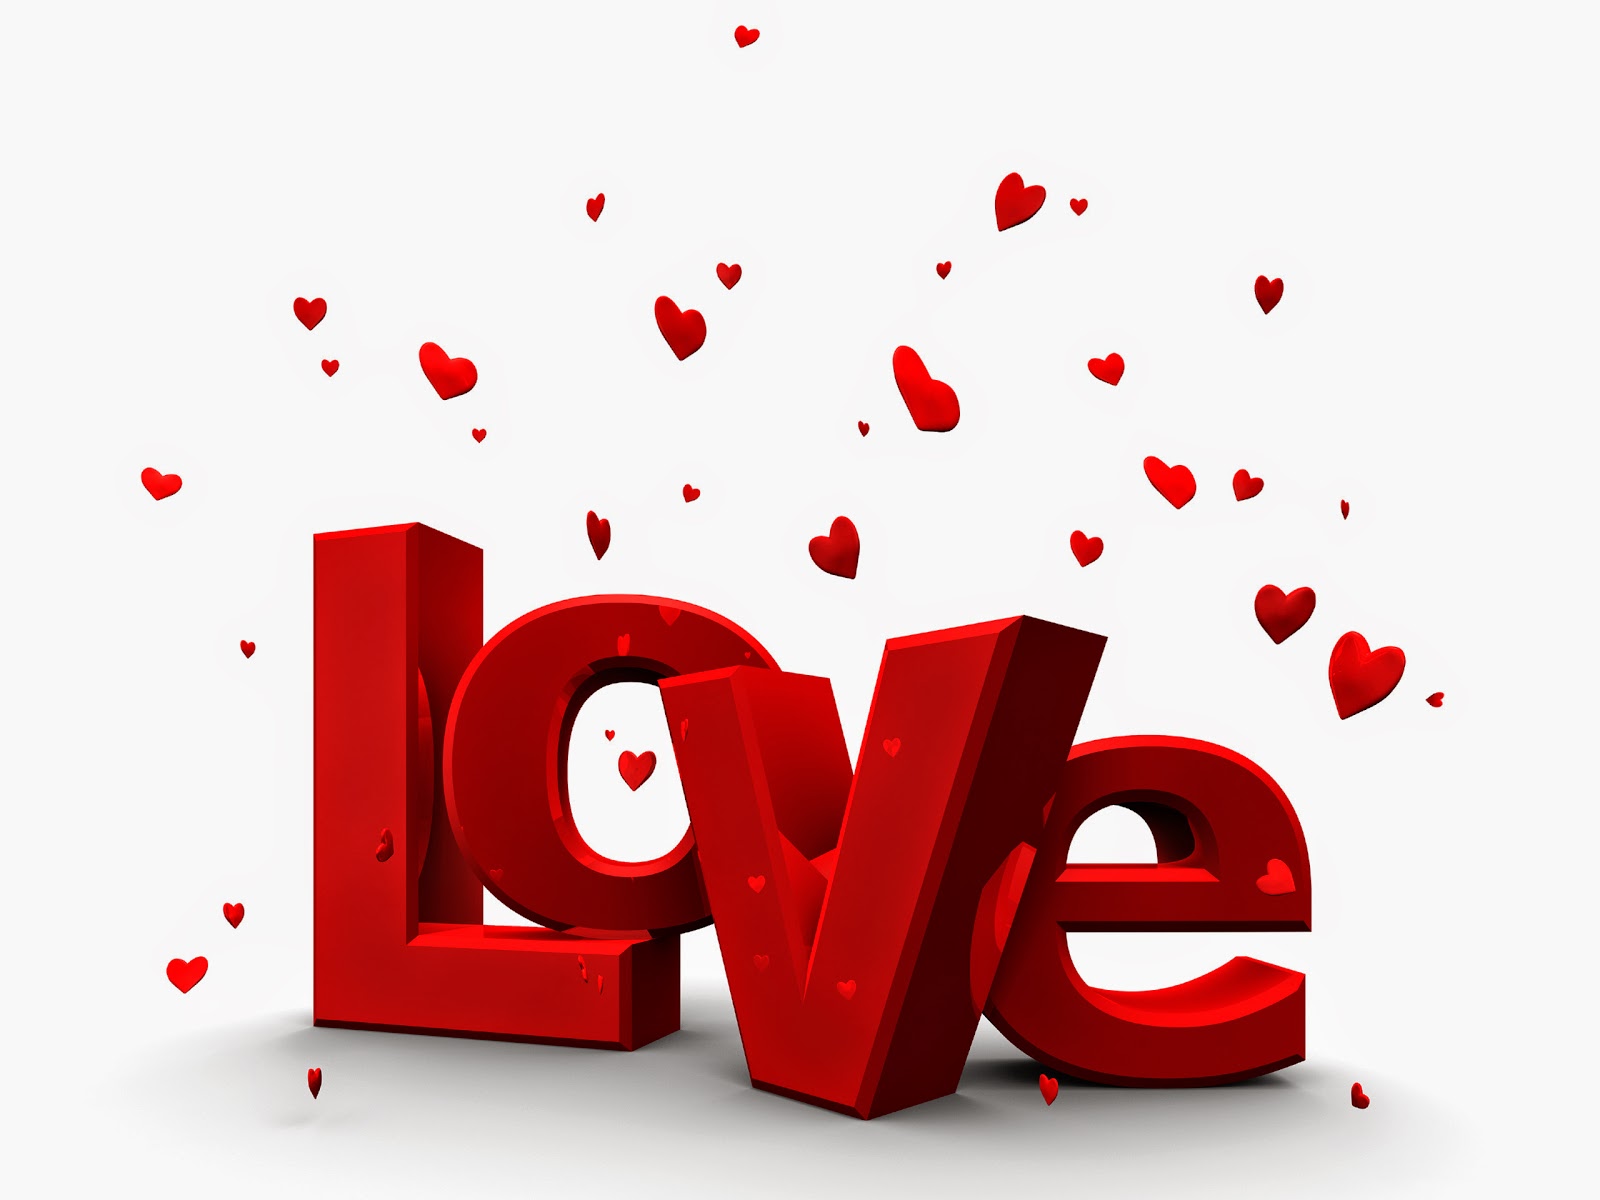 Kata Kata Cinta Romantis Terbaru Untuk Pacar Dan Pasangan Kita